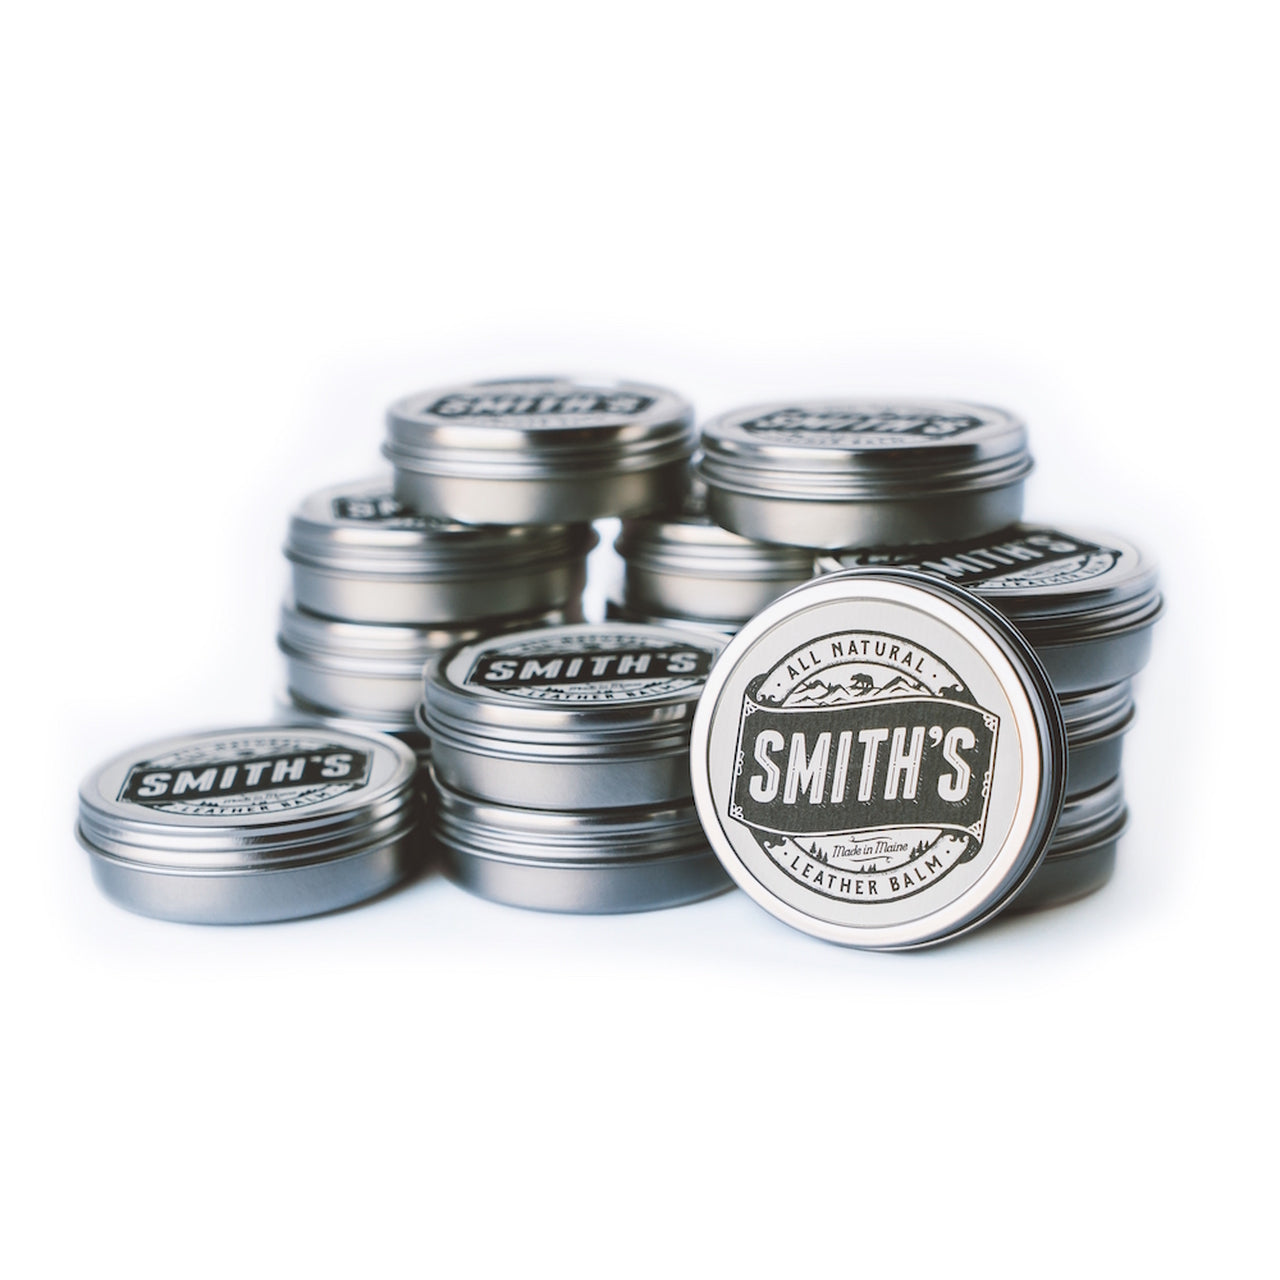 Smith's Leather Balm - 1oz Tin